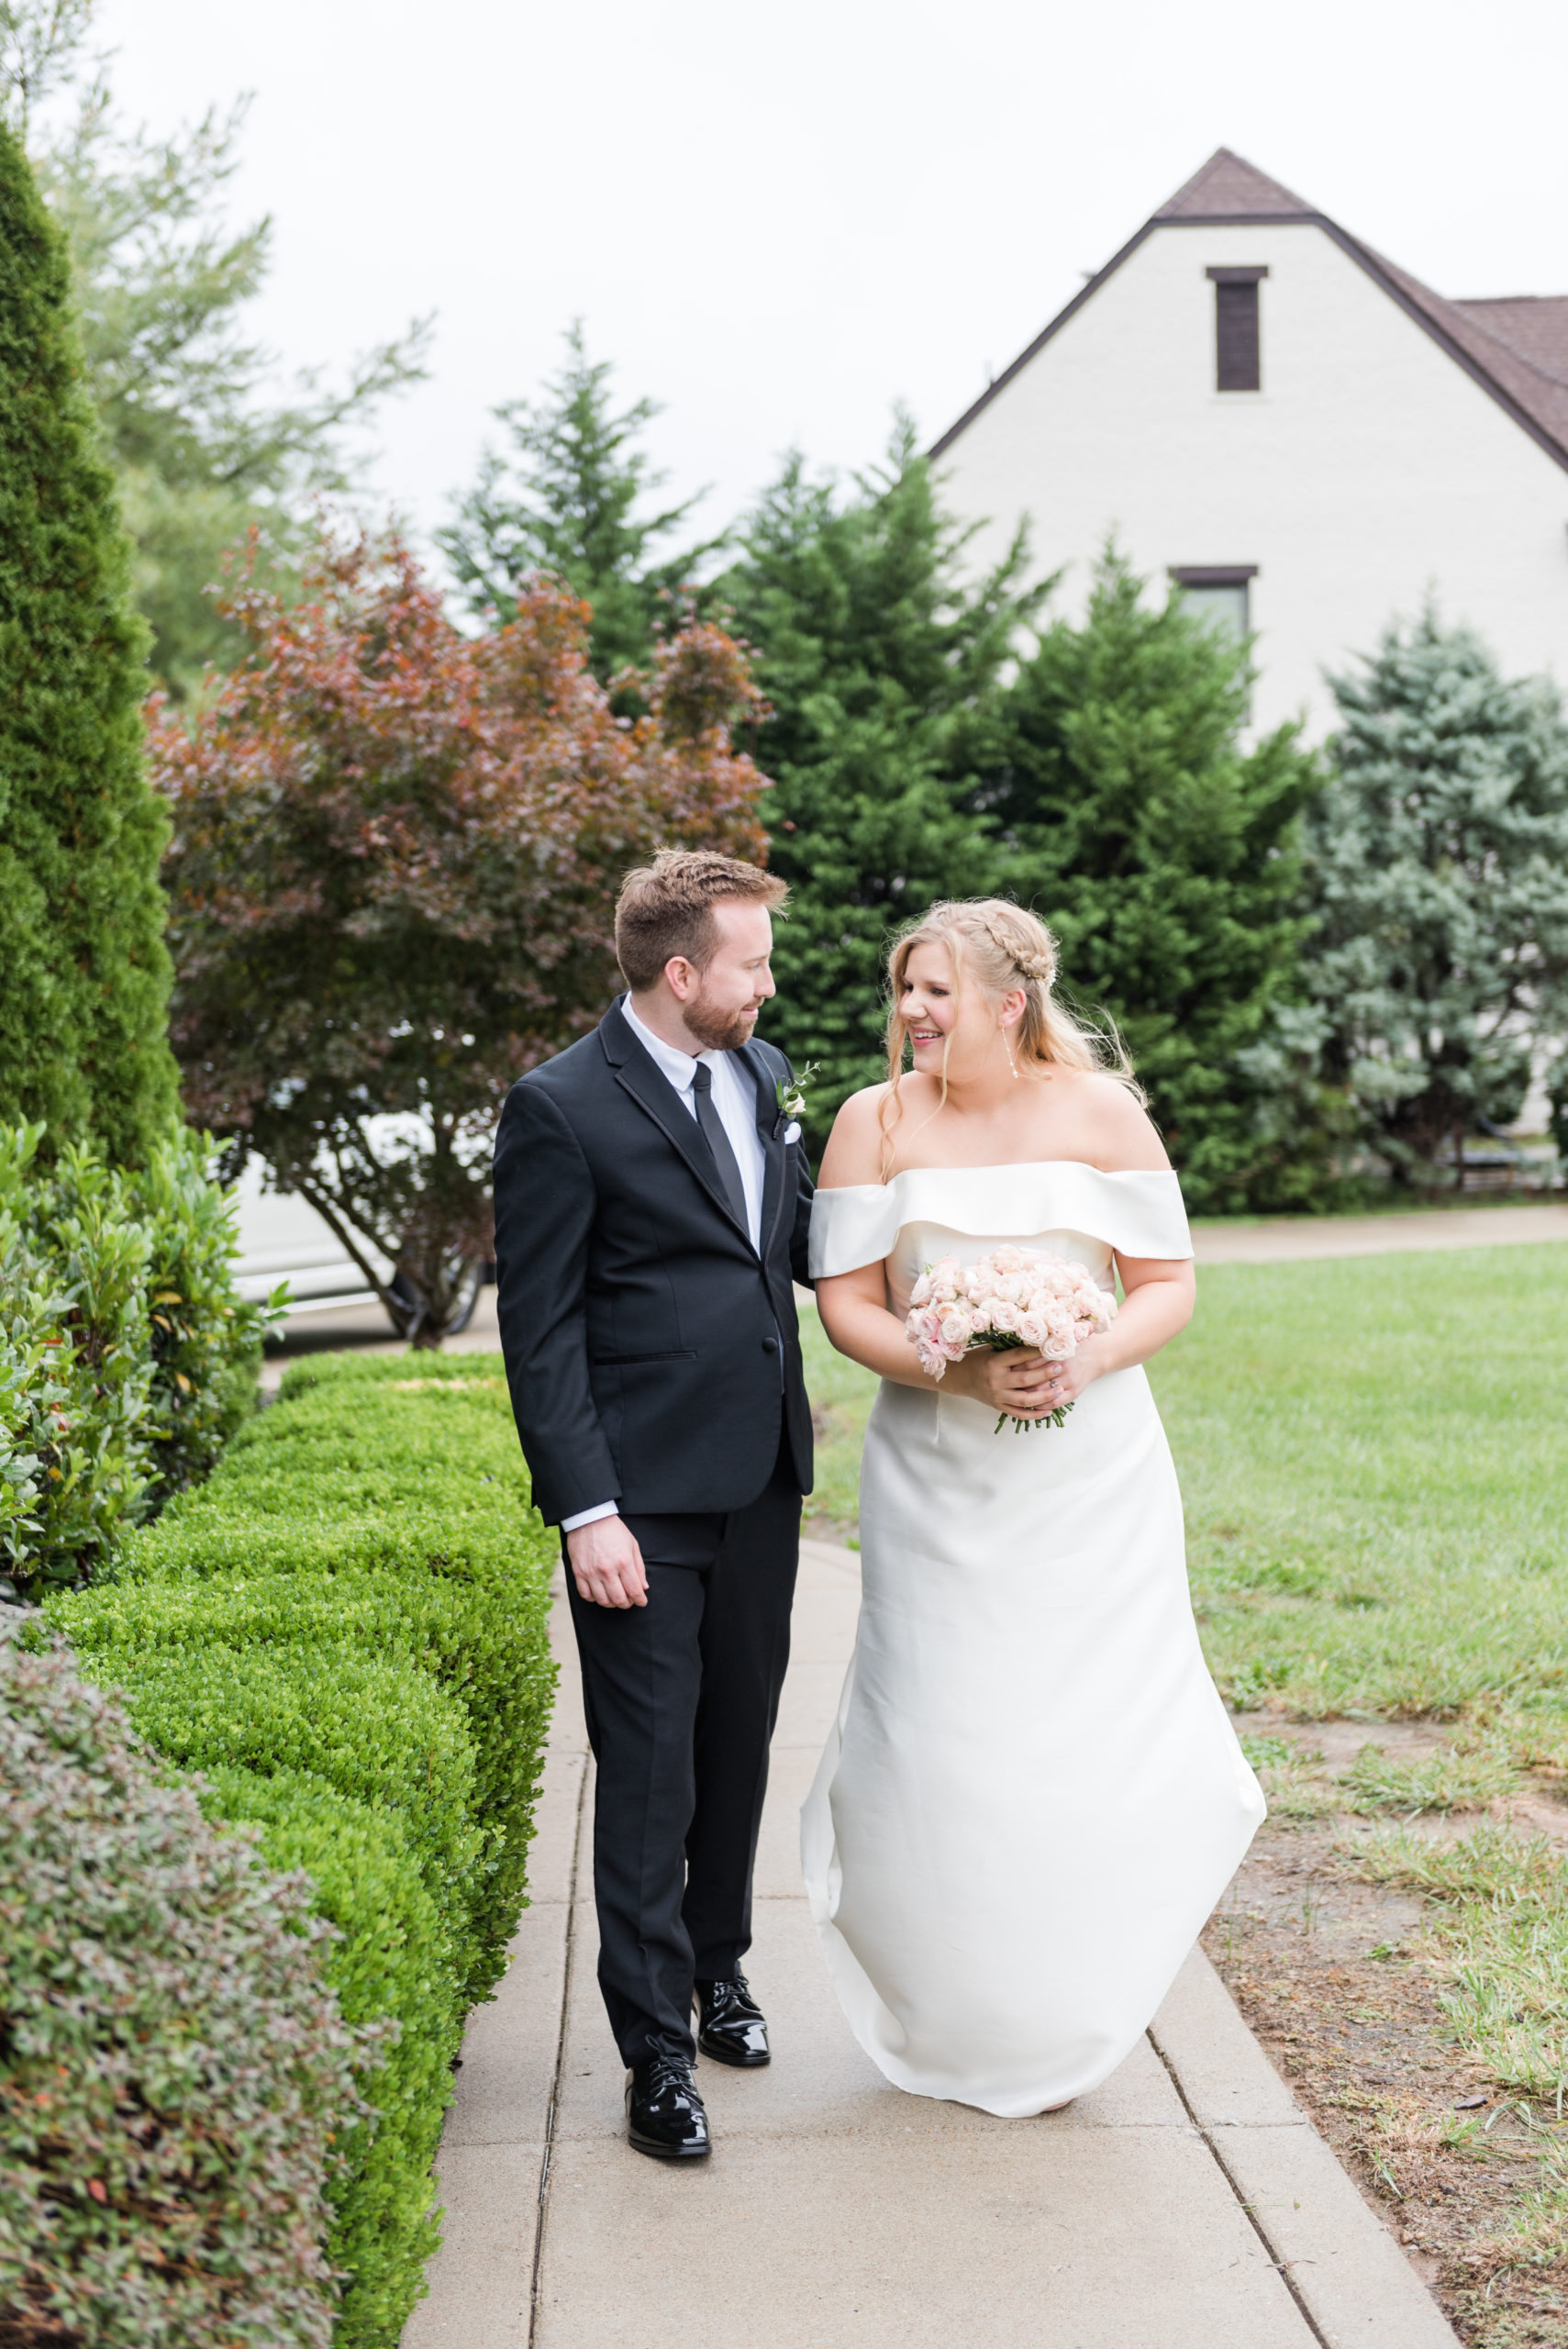 Dusty Blue & Blush Fall Backyard Wedding in Franklin, Tennessee